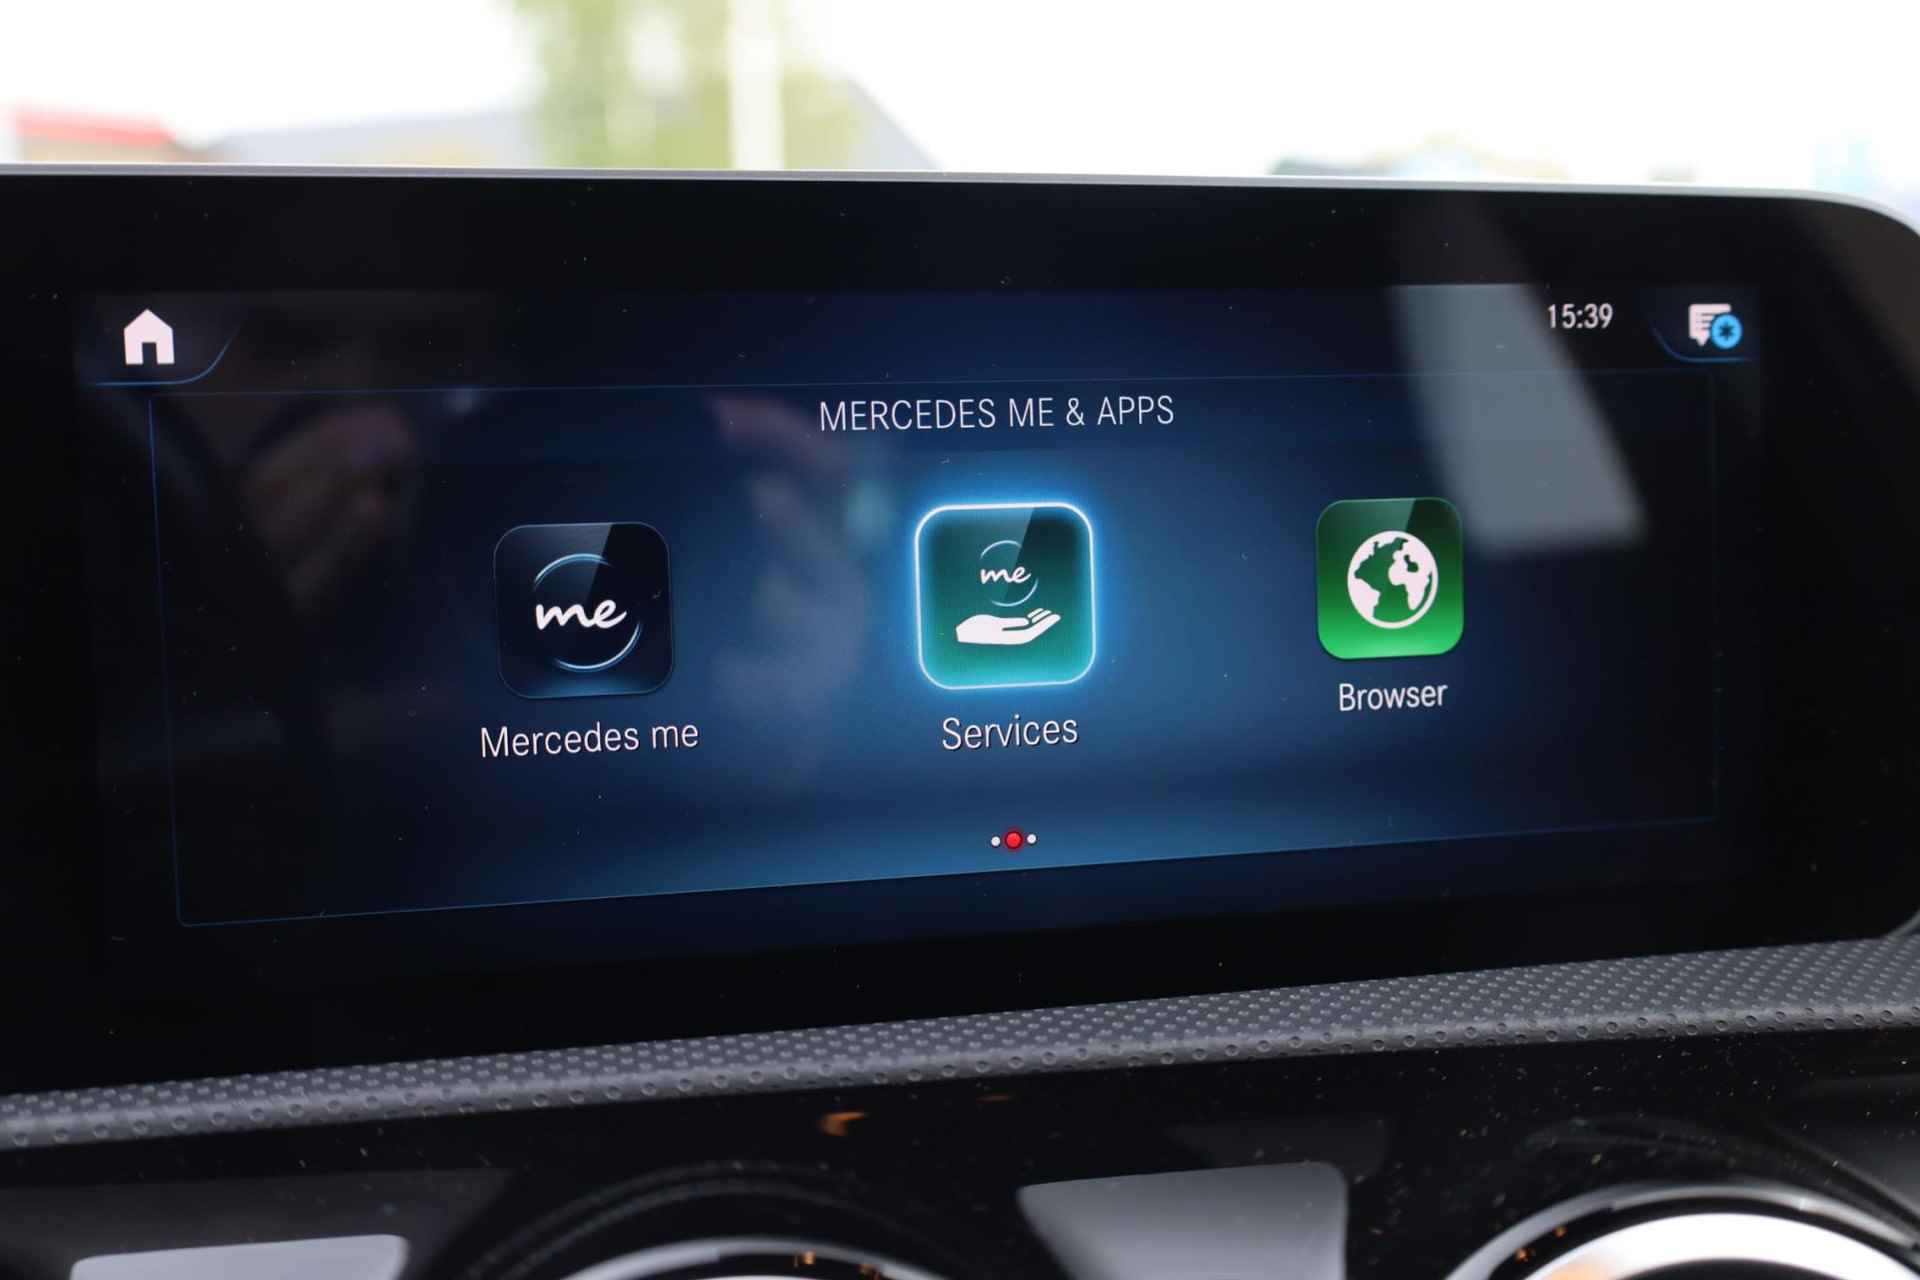 Mercedes-Benz A-klasse 200 Business Solution AMG 120KW/163PK automaat, Leder / alcantara, winterset LMV digitaal dashboard, navigatie, LED verlichting voor en achter, 18" LMV, stoelverwarming, parkeersensoren voor en achter, AMG bumpers - 26/44